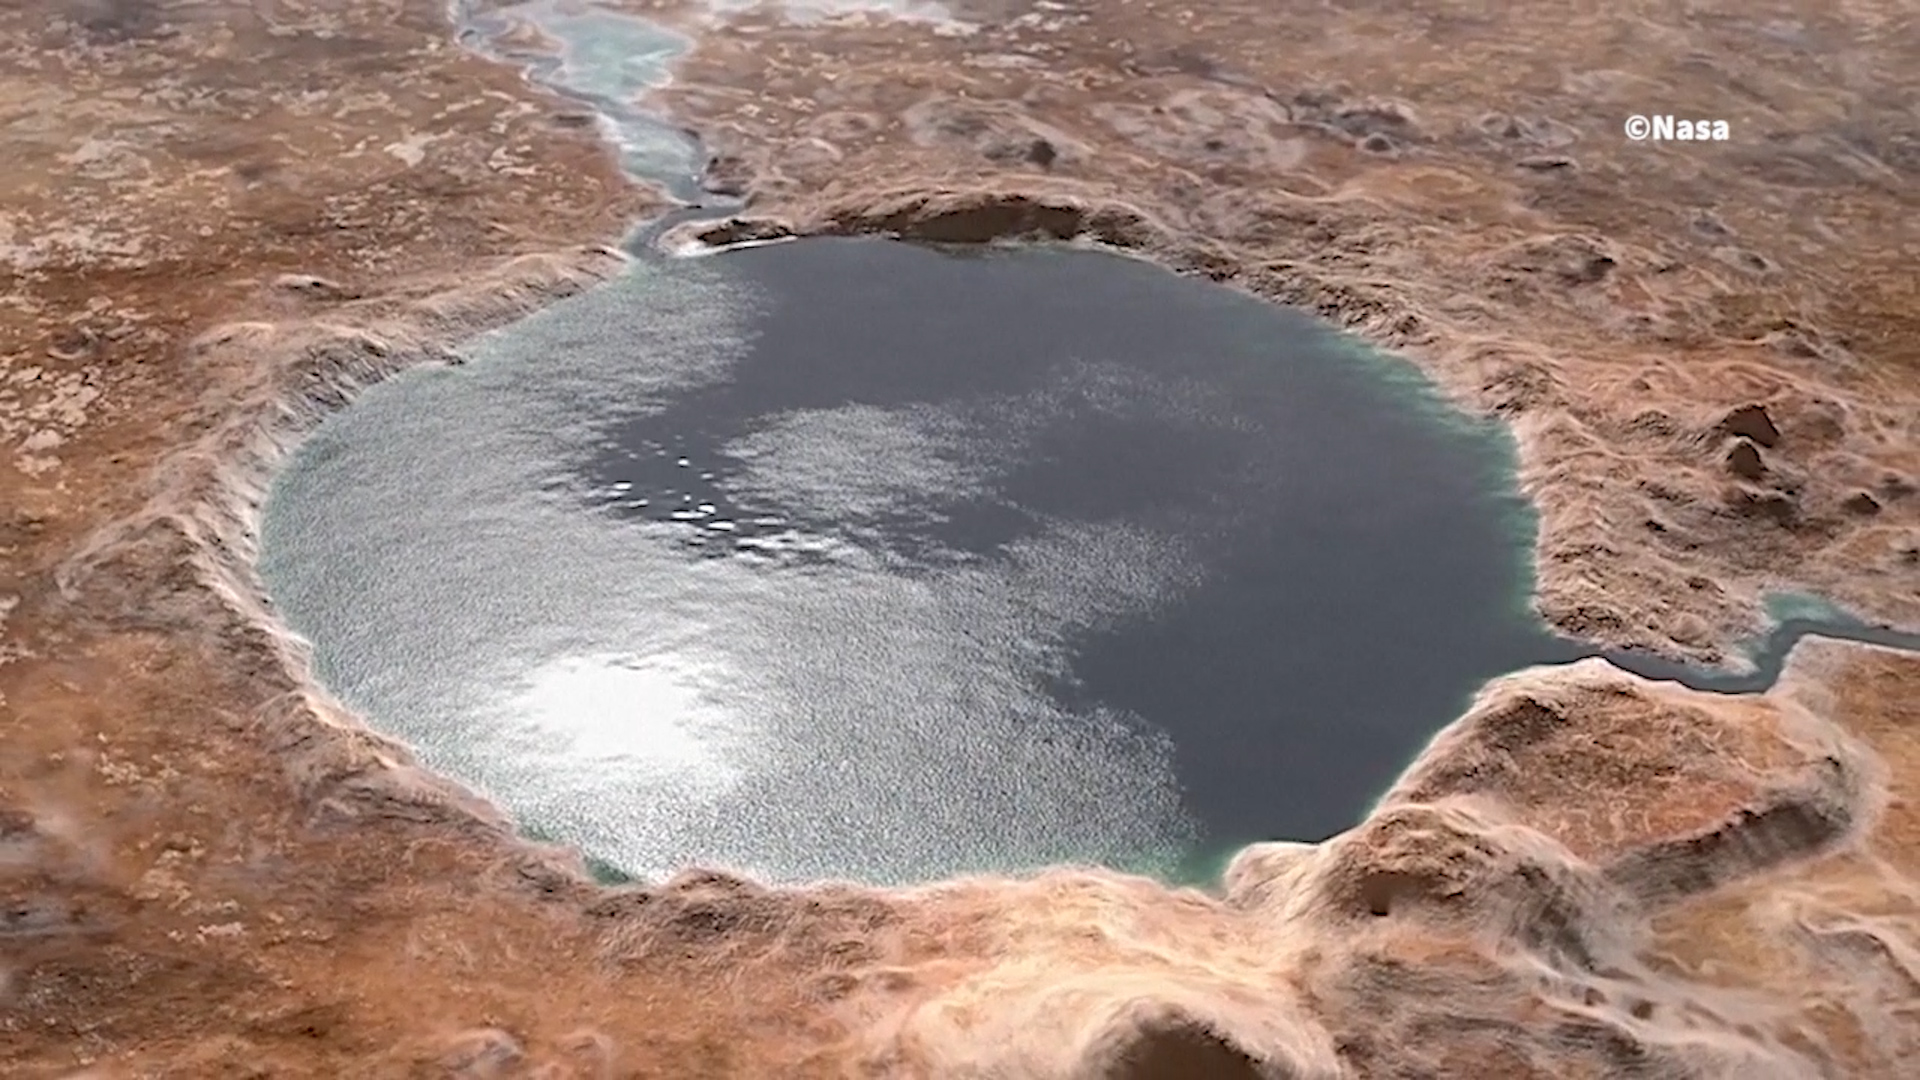 El cráter Jezero tuvo abundante agua hace 3500 millones de años (NASA)